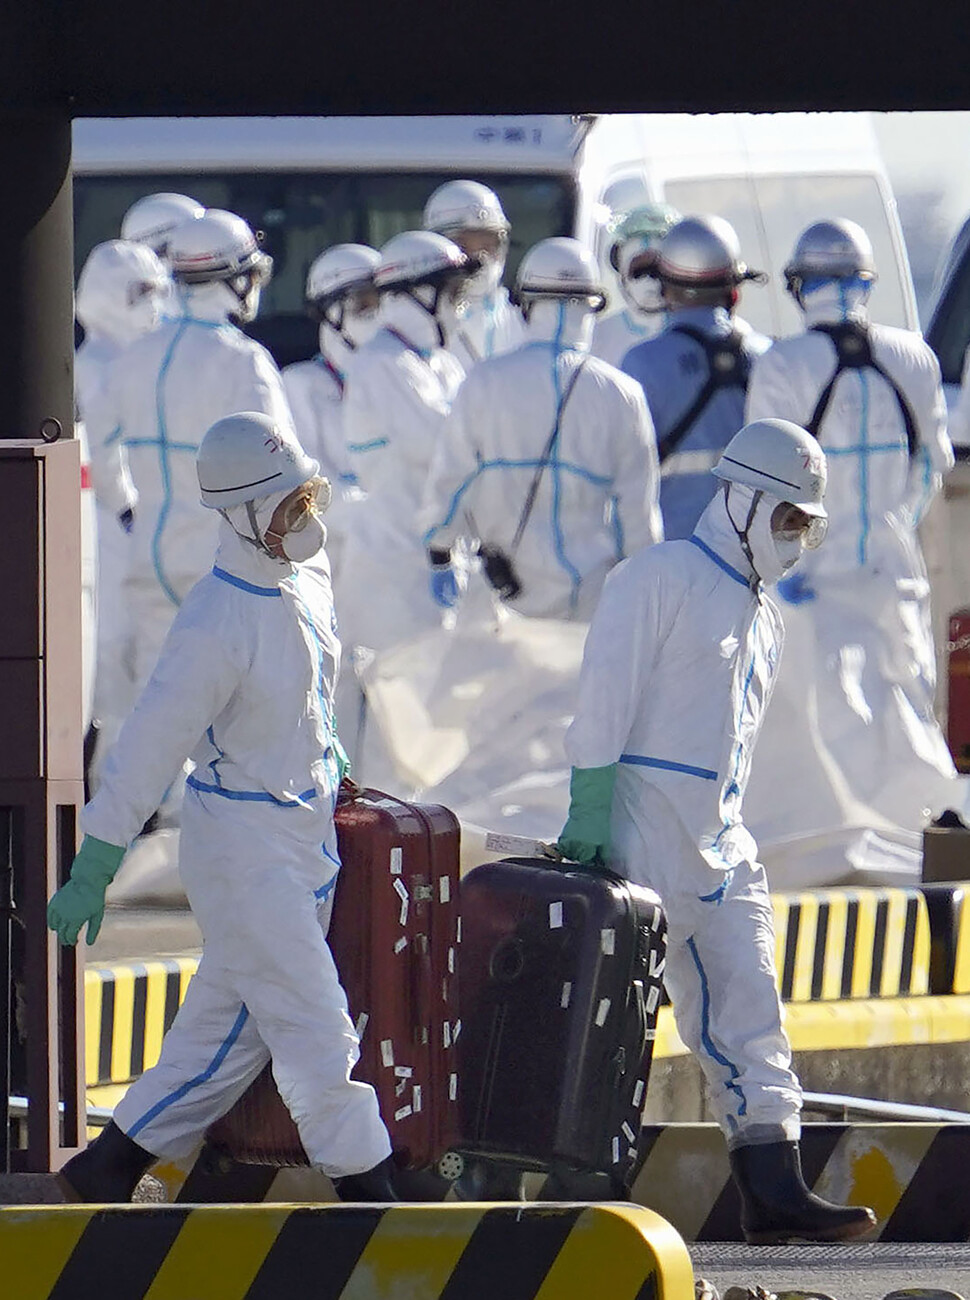 5일 일본 가나가와현 요코하마항에서 흰색 방호복을 입은 일본 의료 관계자들이 신종 코로나바이러스 감염증 환자가 10명 새로 나온 크루즈선 탑승자들의 짐을 옮기고 있다. 요코하마/교도 연합뉴스